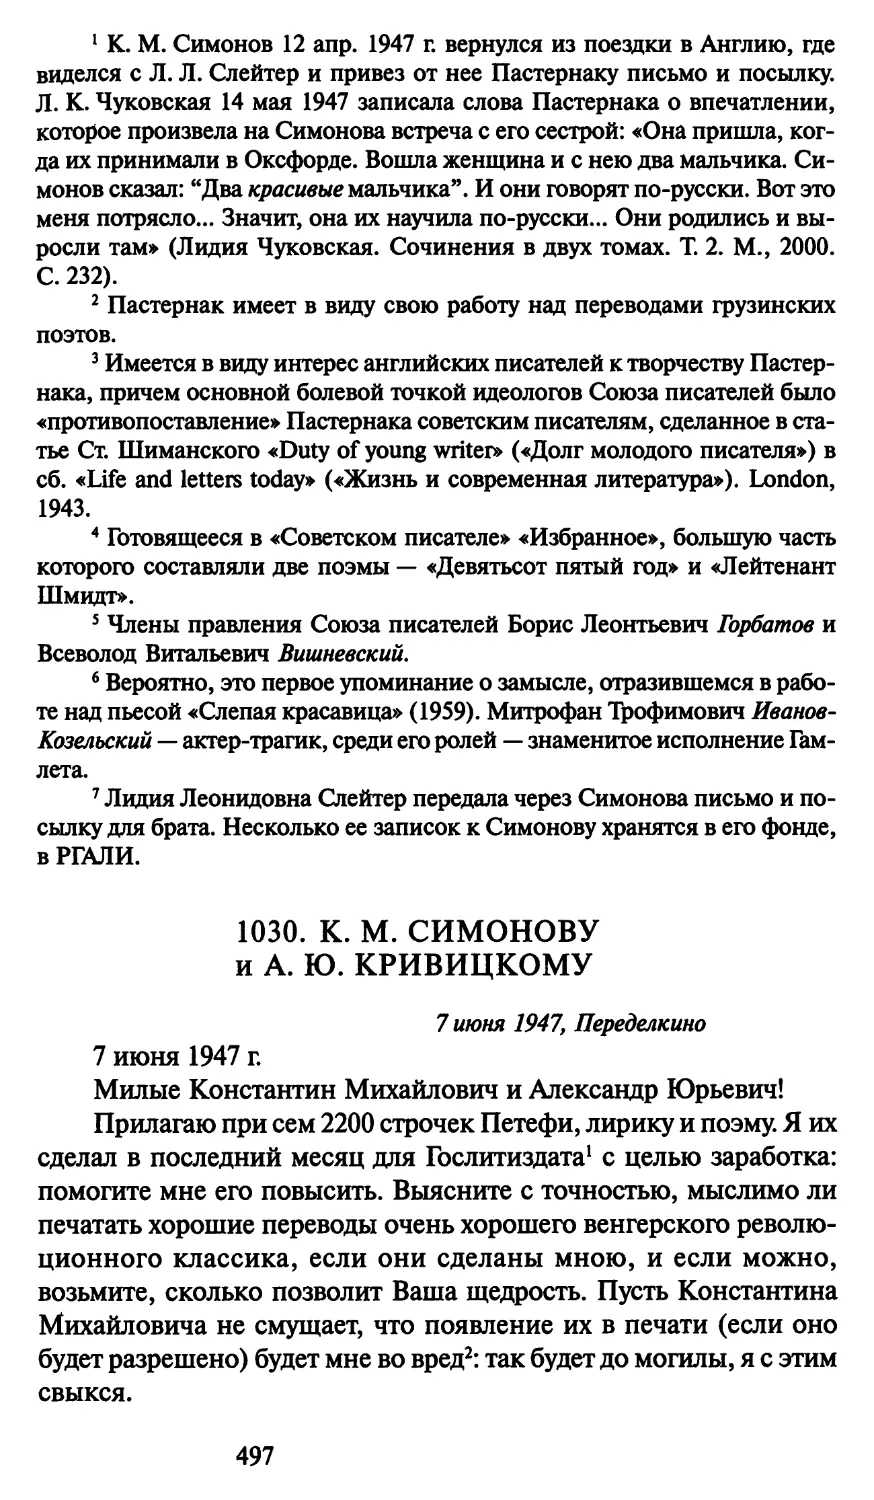 1030. К. М. Симонову и А. Ю. Кривицкому 7 июня 1947